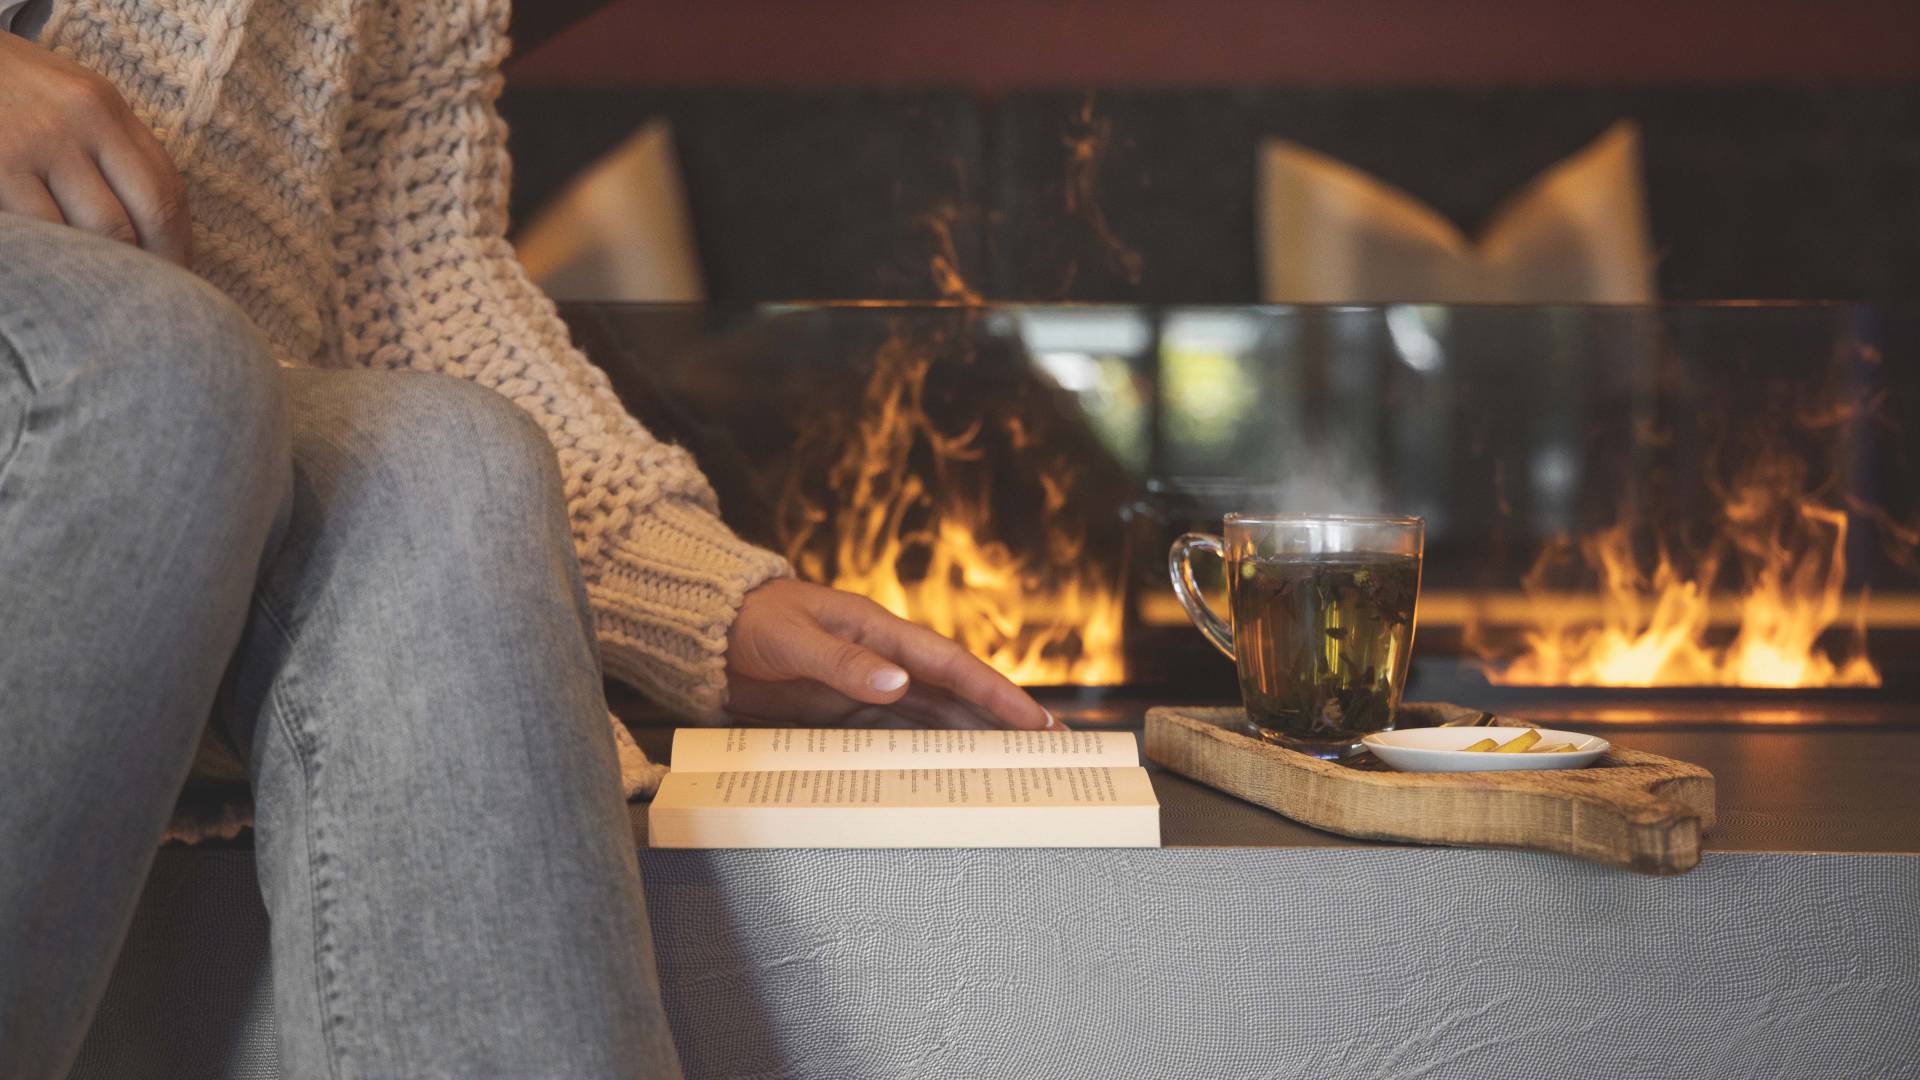 Frau sitzt mit Buch und Tee vor einem Kaminfeuer.